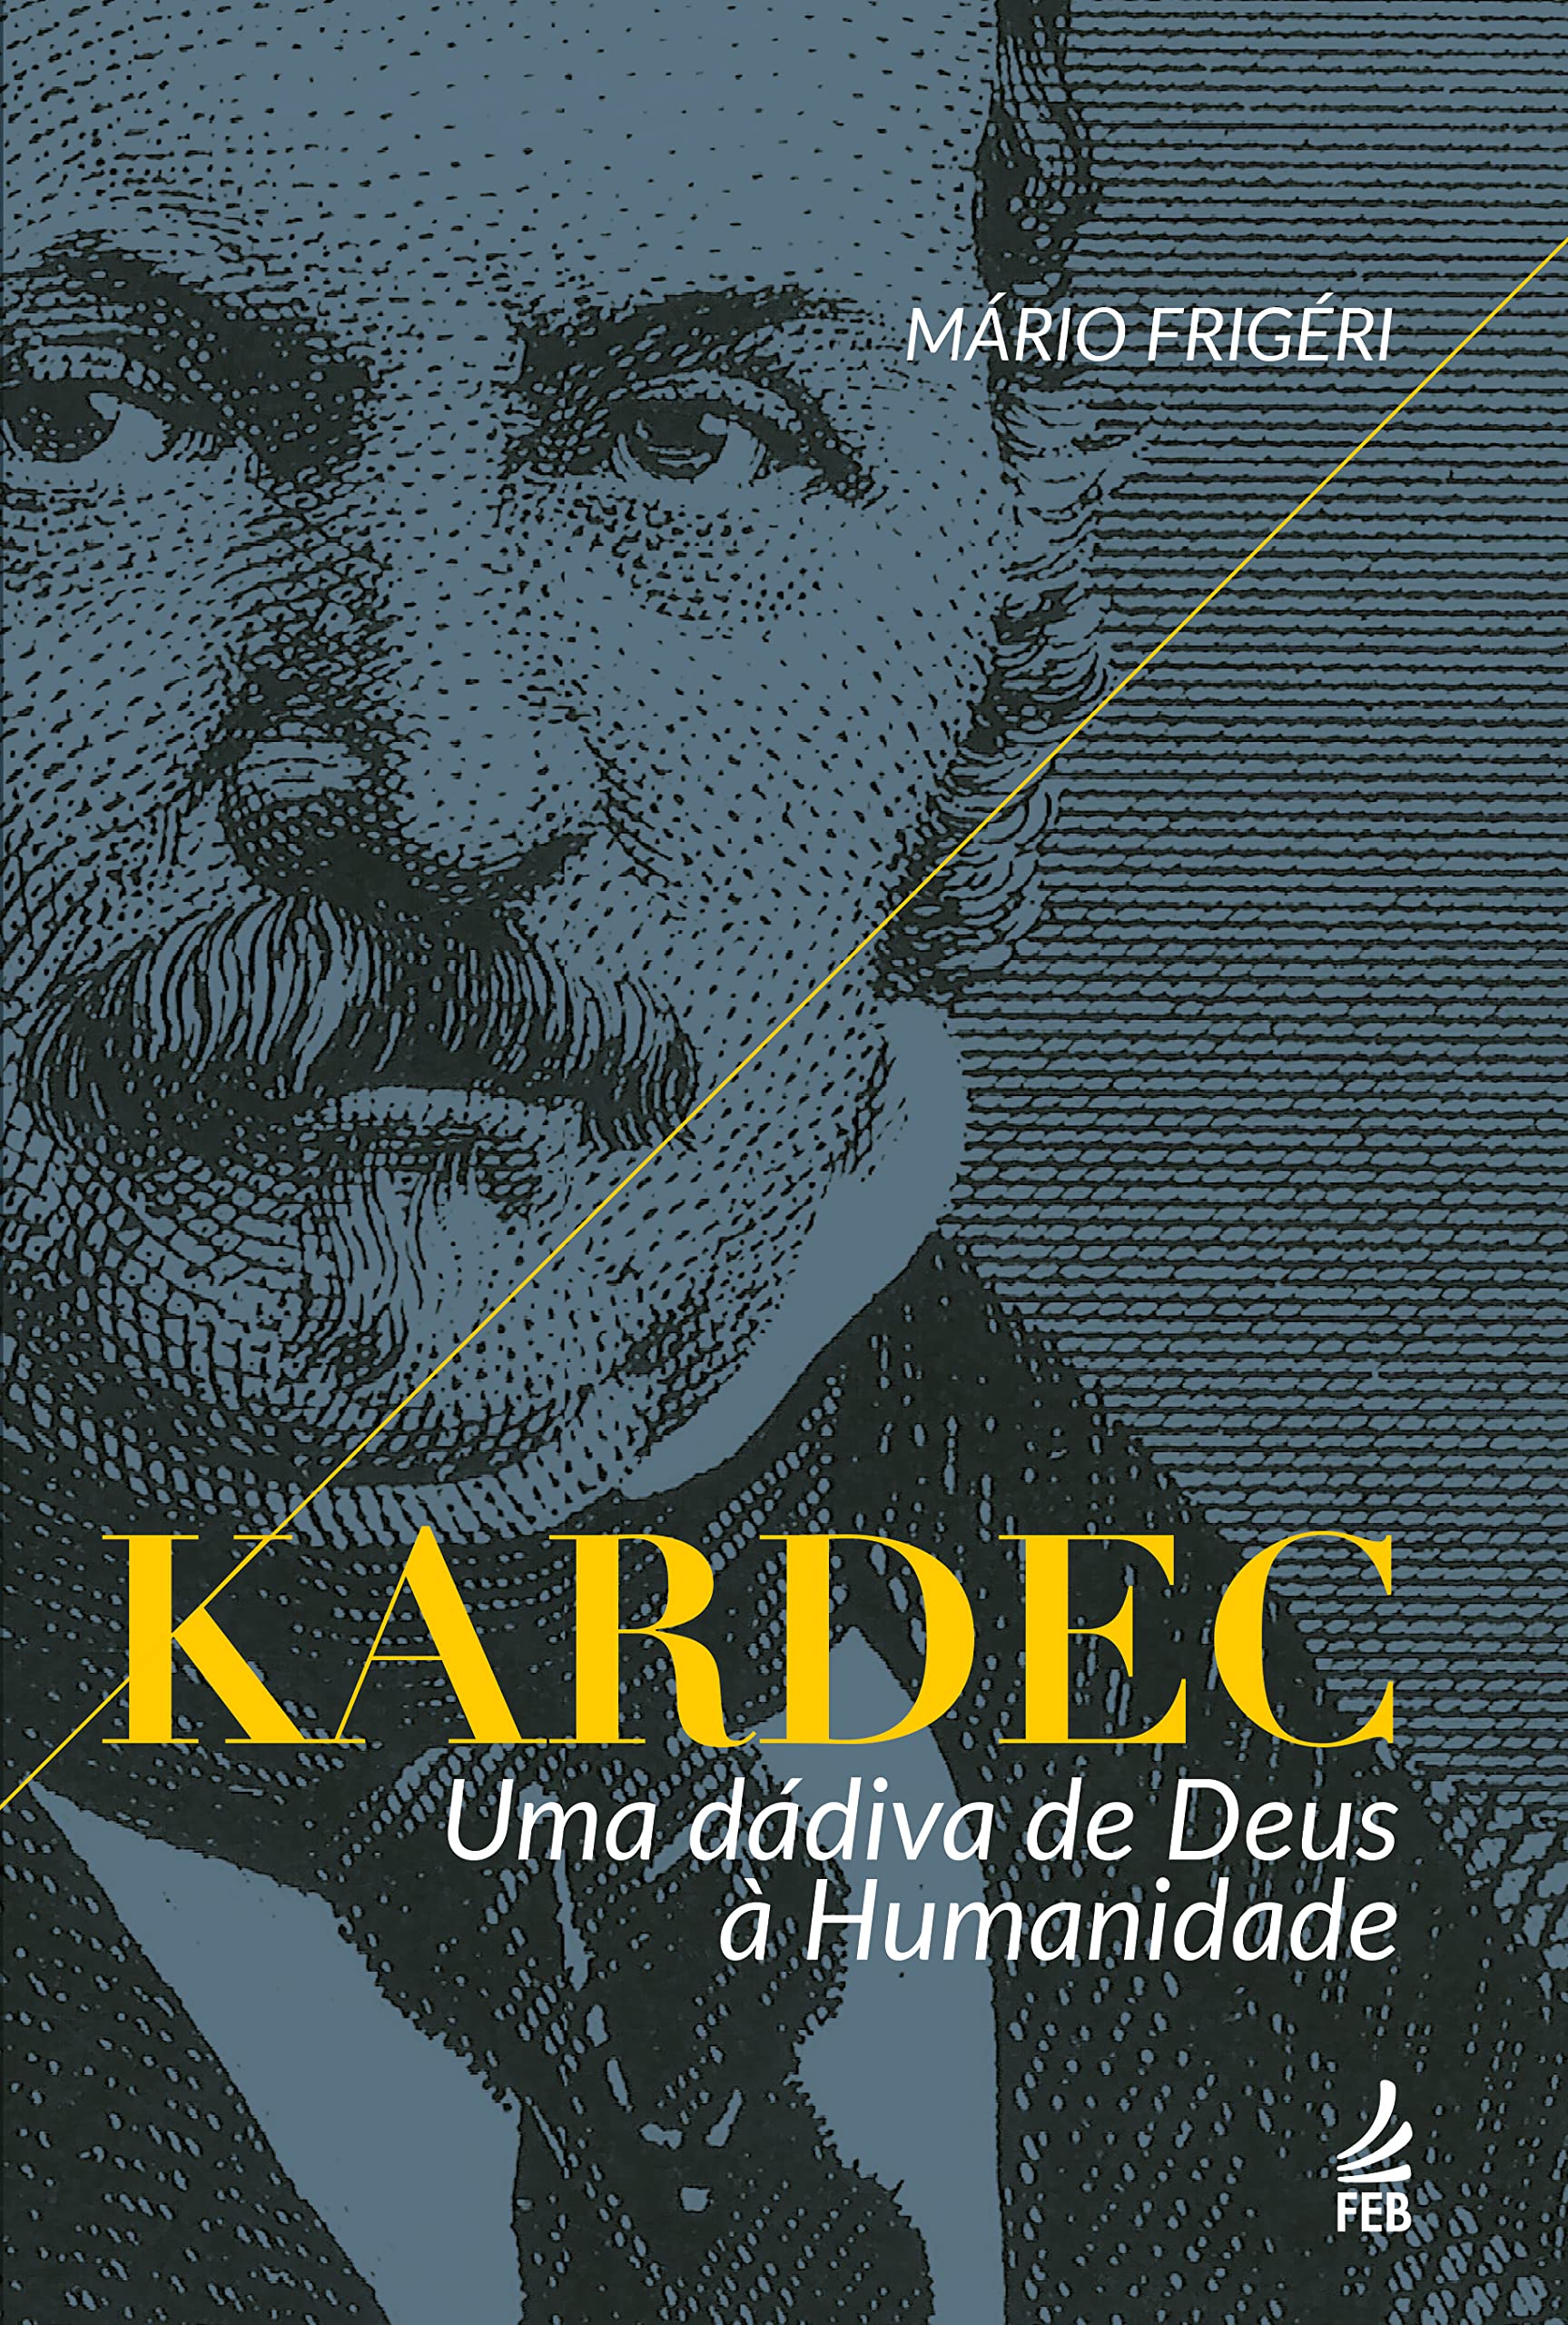 Kardec – Uma dádiva de Deus à humanidade